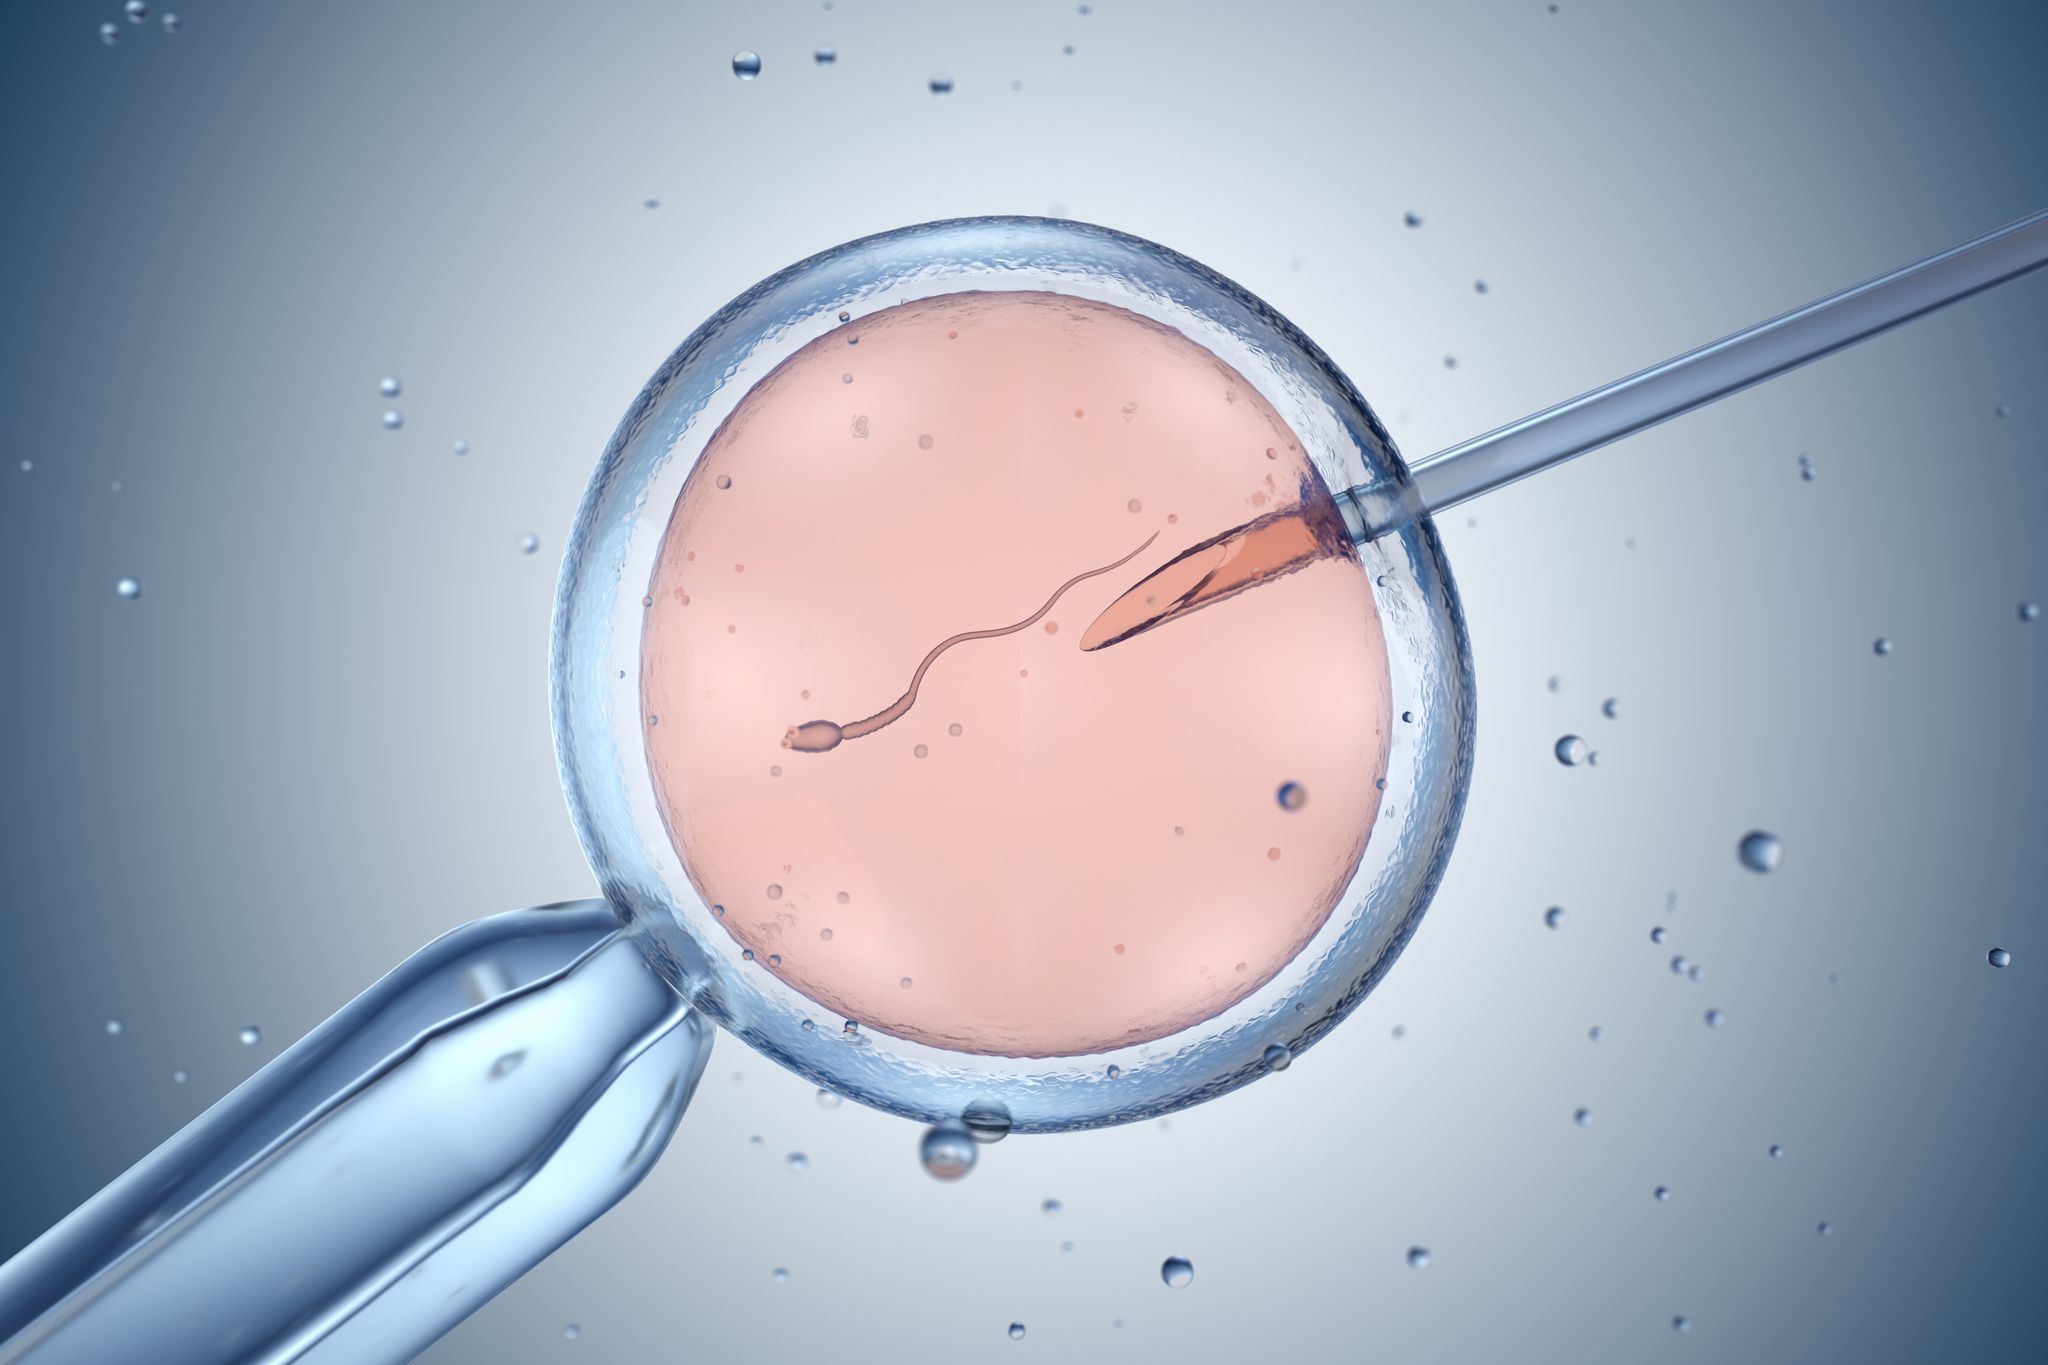 artificial insemination or in vitro fertilization 3d illustration